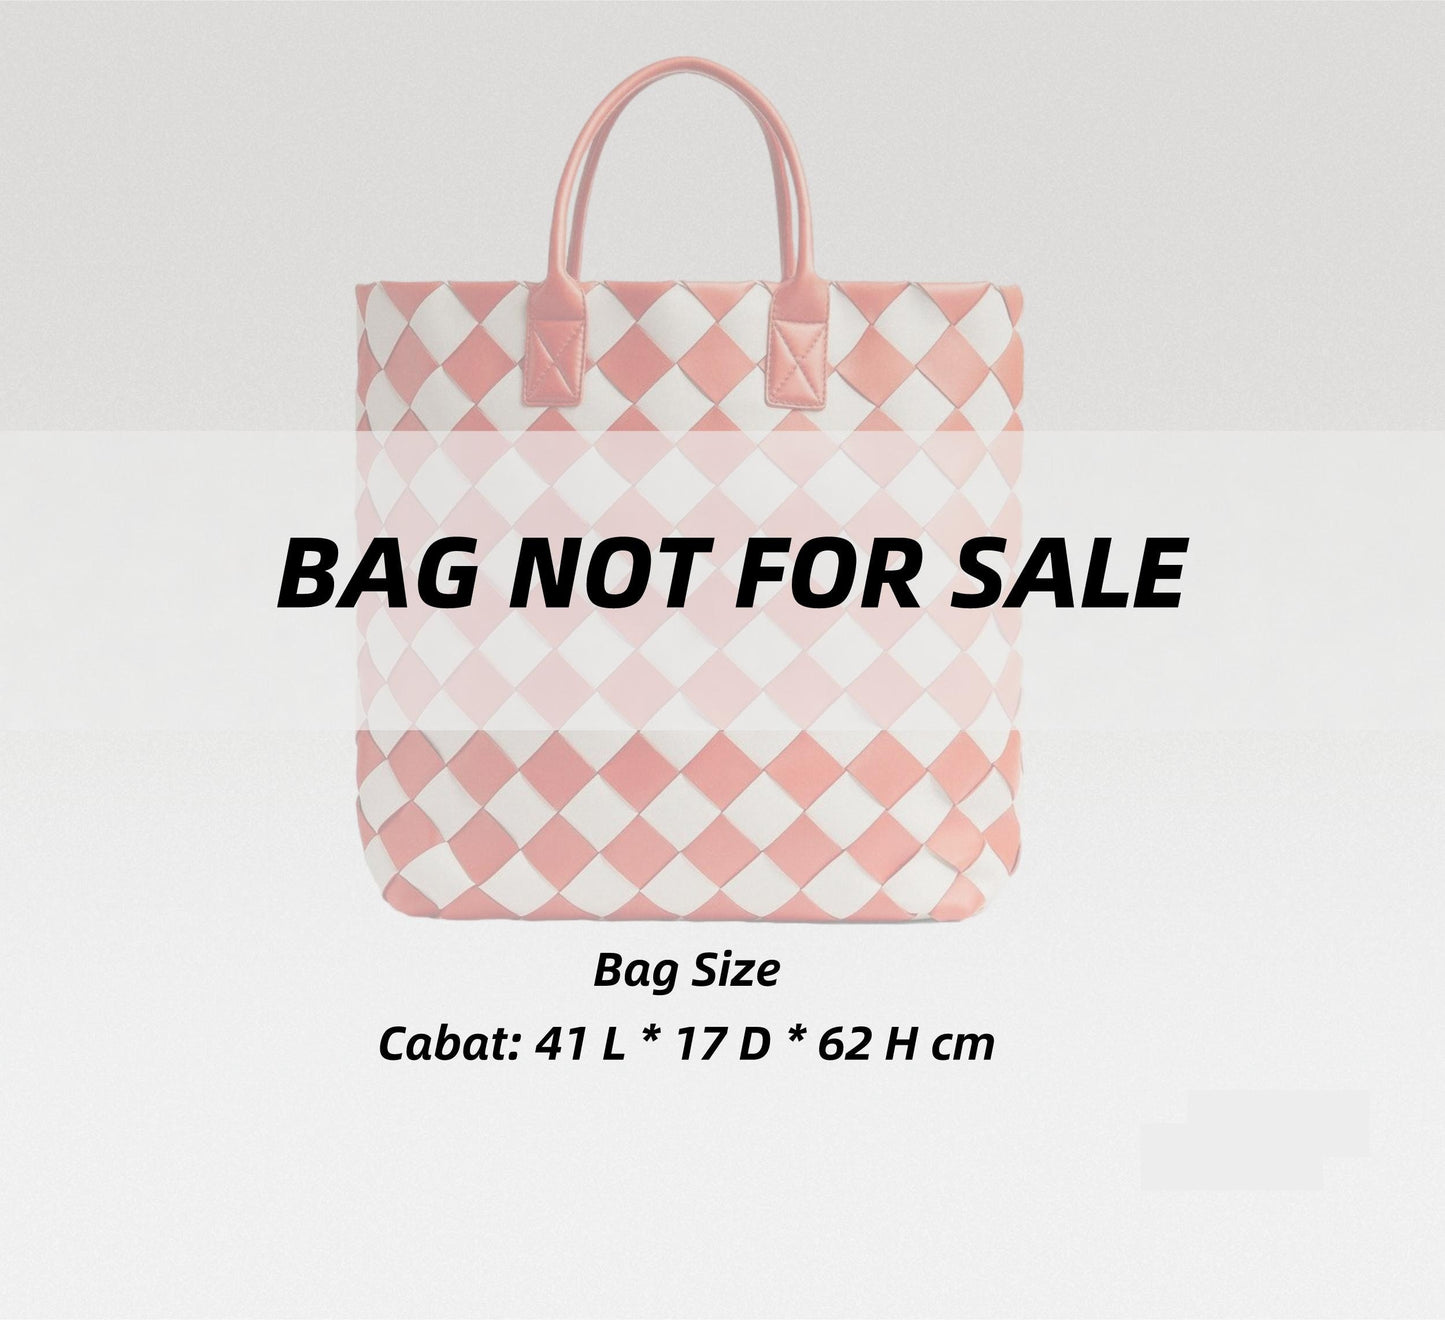 Bag Organizer For Cabat Tote Bag | Bag Insert For Tote Bag | Felt Bag Organizer For Handbag Bag